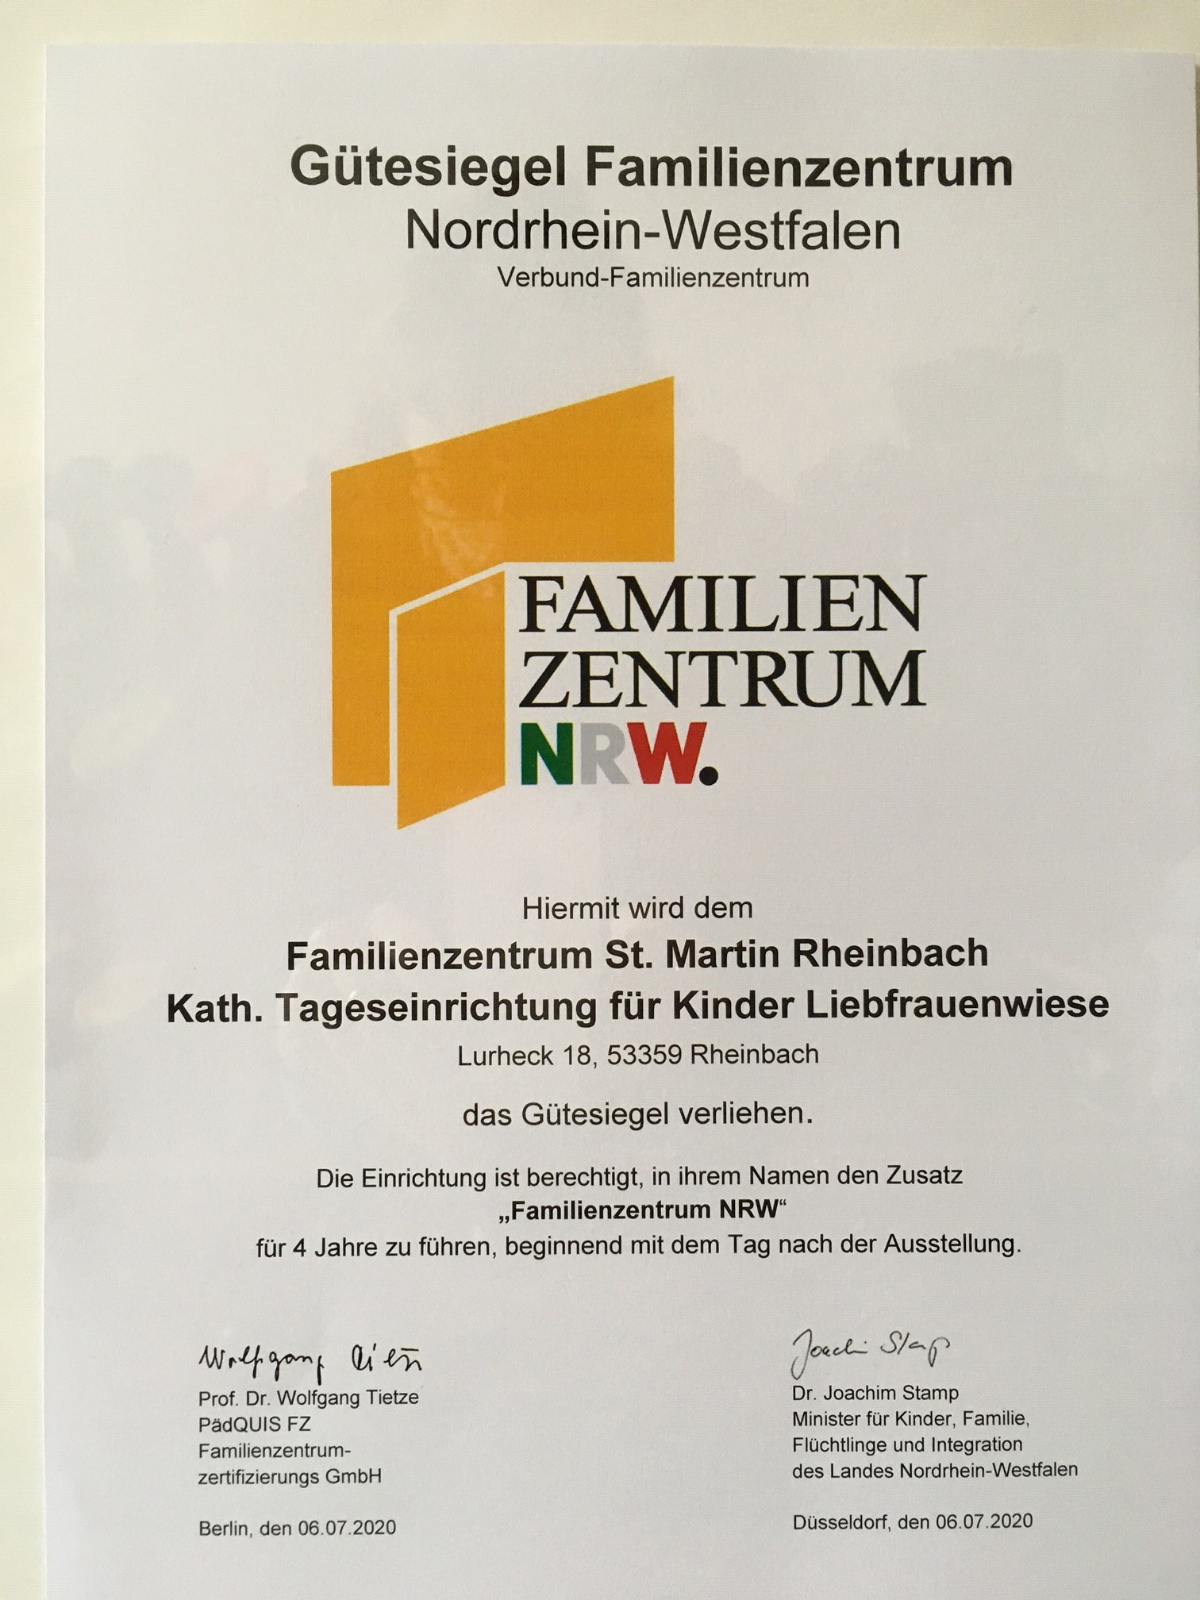 Urkunde_Zertifikation_Familienzentrum_NRW